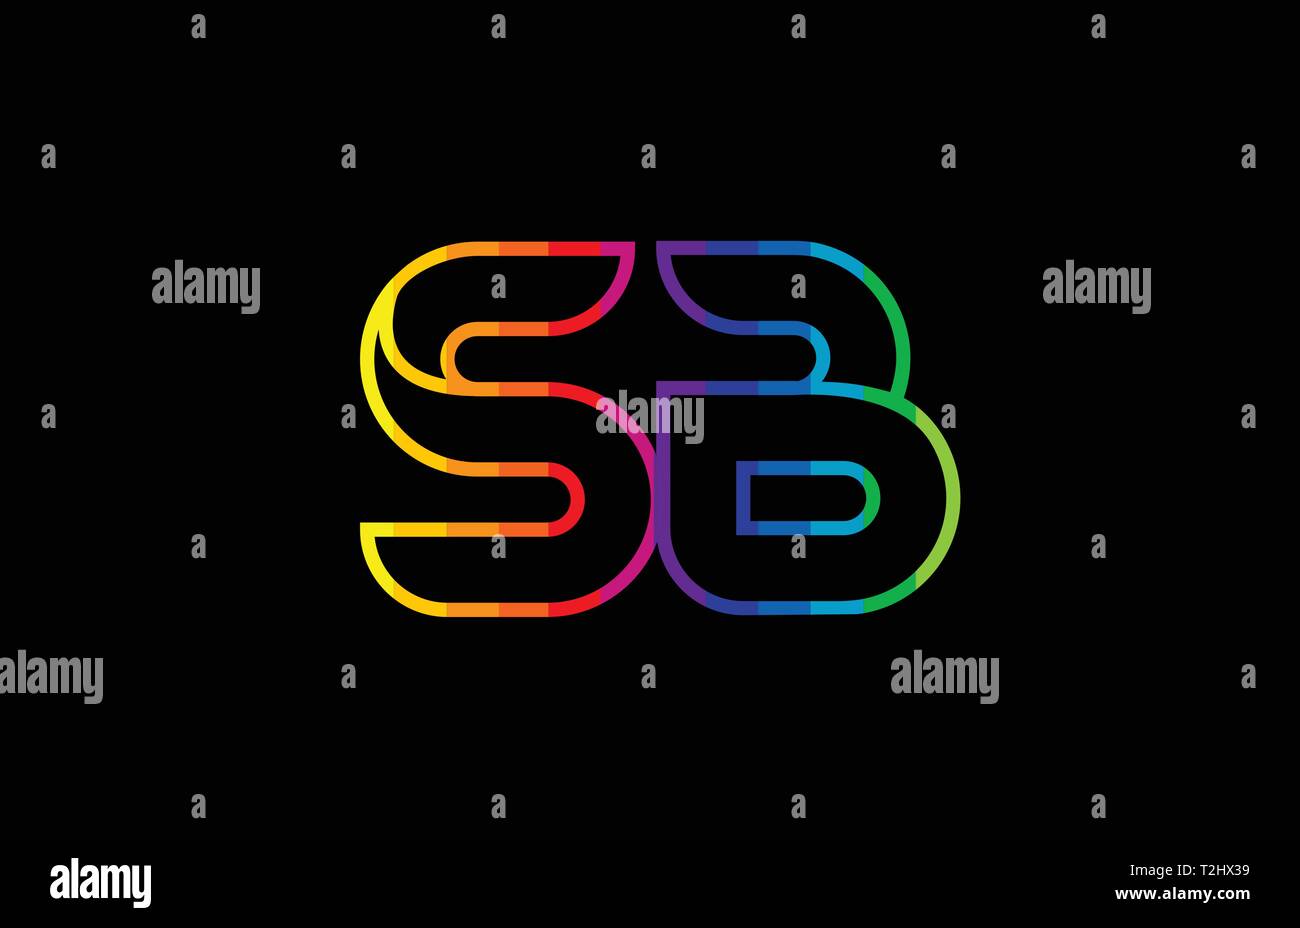 Regenbogen Farbe farbig bunt Buchstaben sb s b logo Kombination design geeignet für ein Unternehmen oder ein Geschäft Stock Vektor